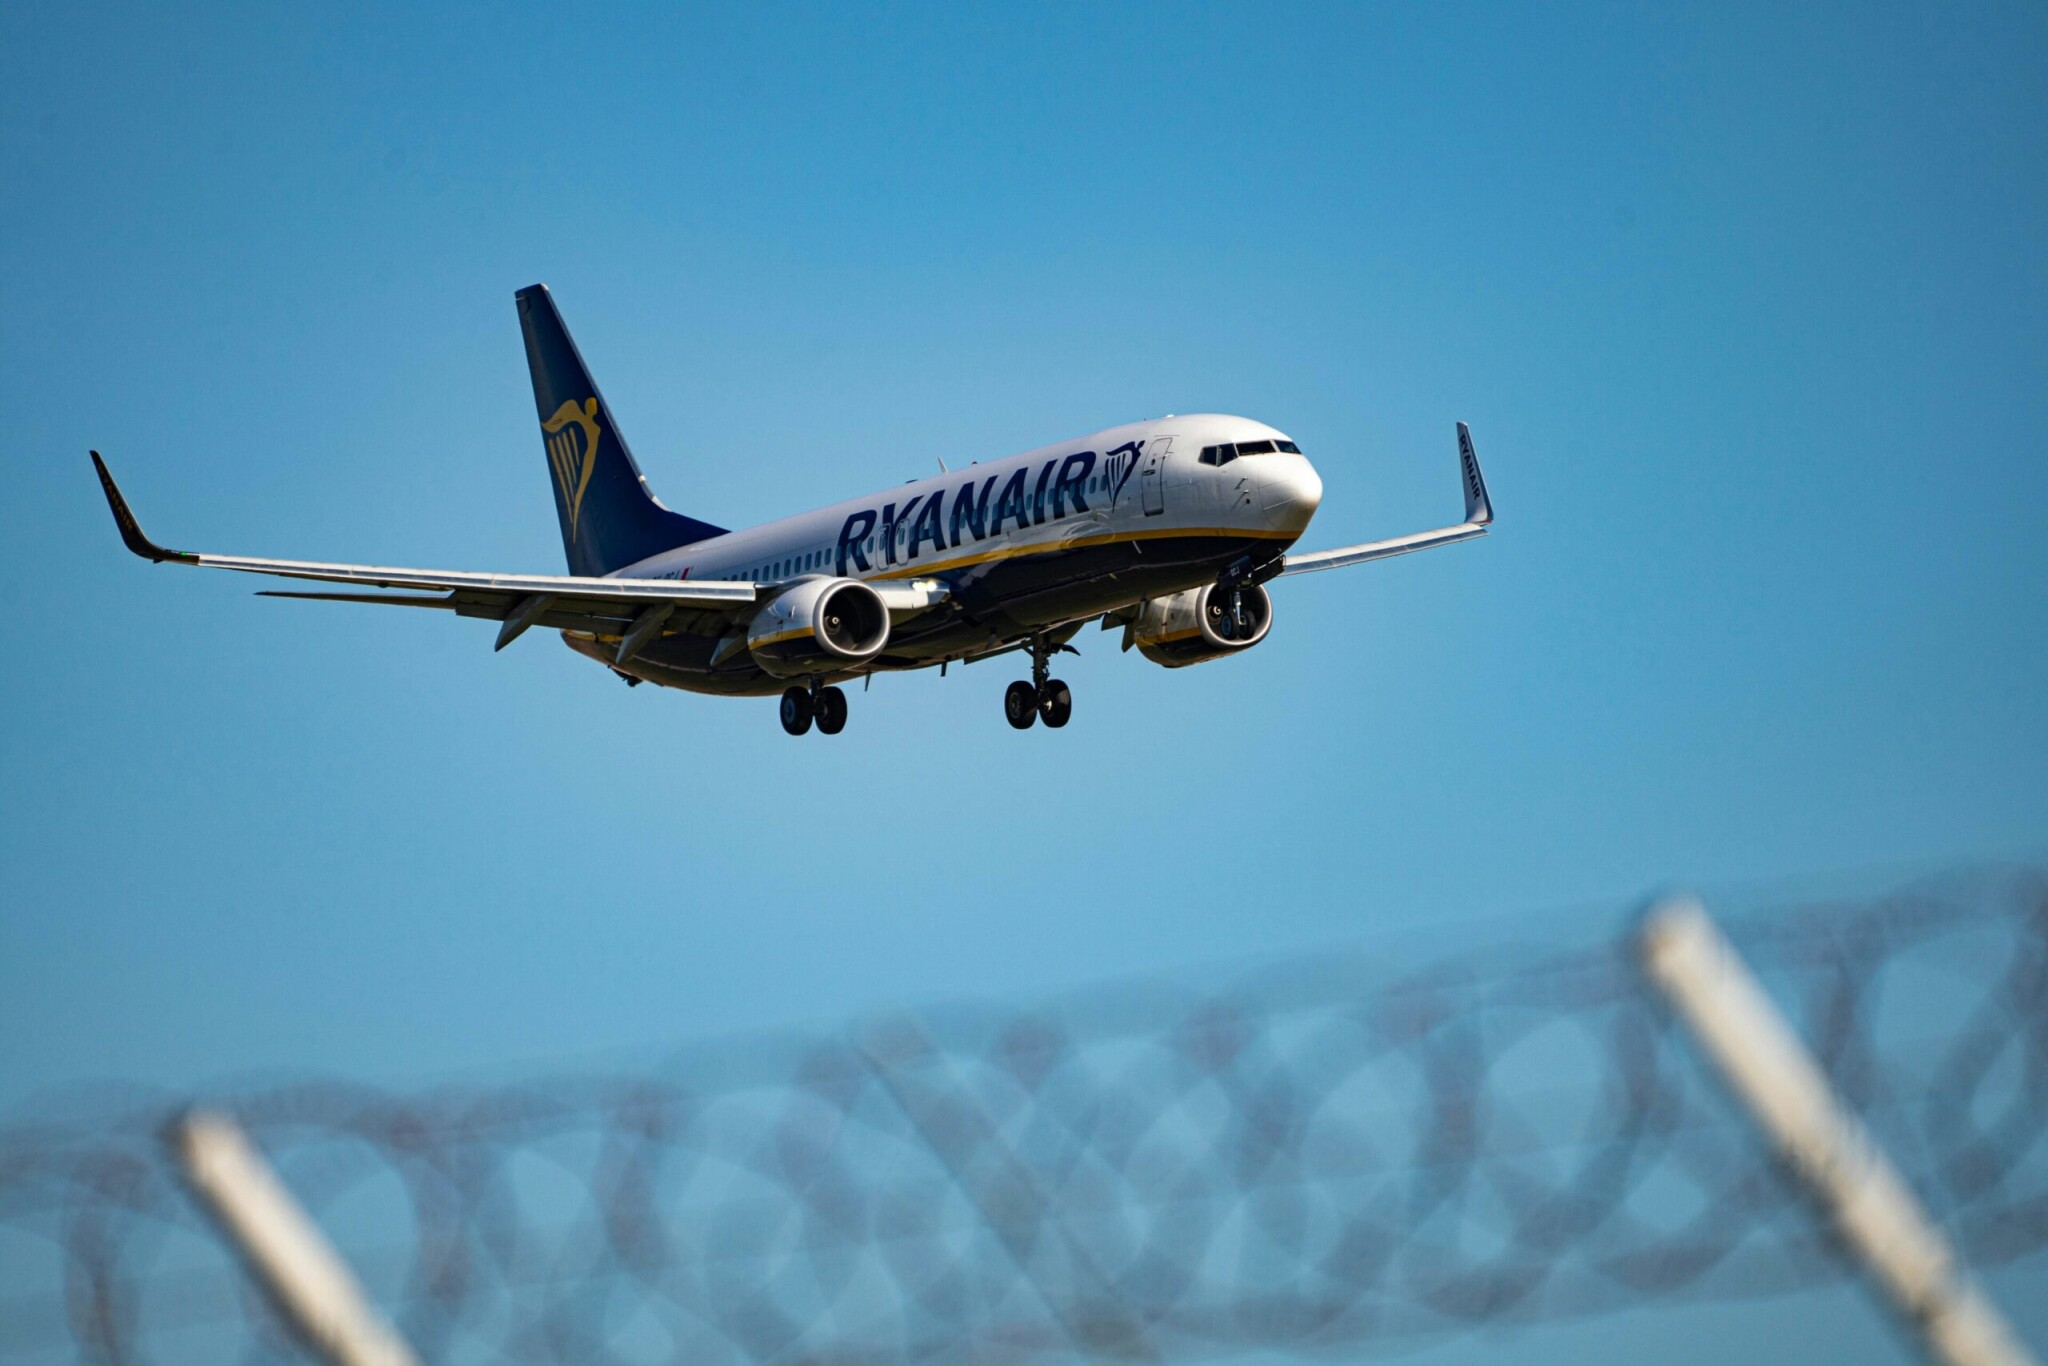 Ryanair zaznamenal propad. Aerolince klesl ve třetím čtvrtletí čistý zisk o 93 procent